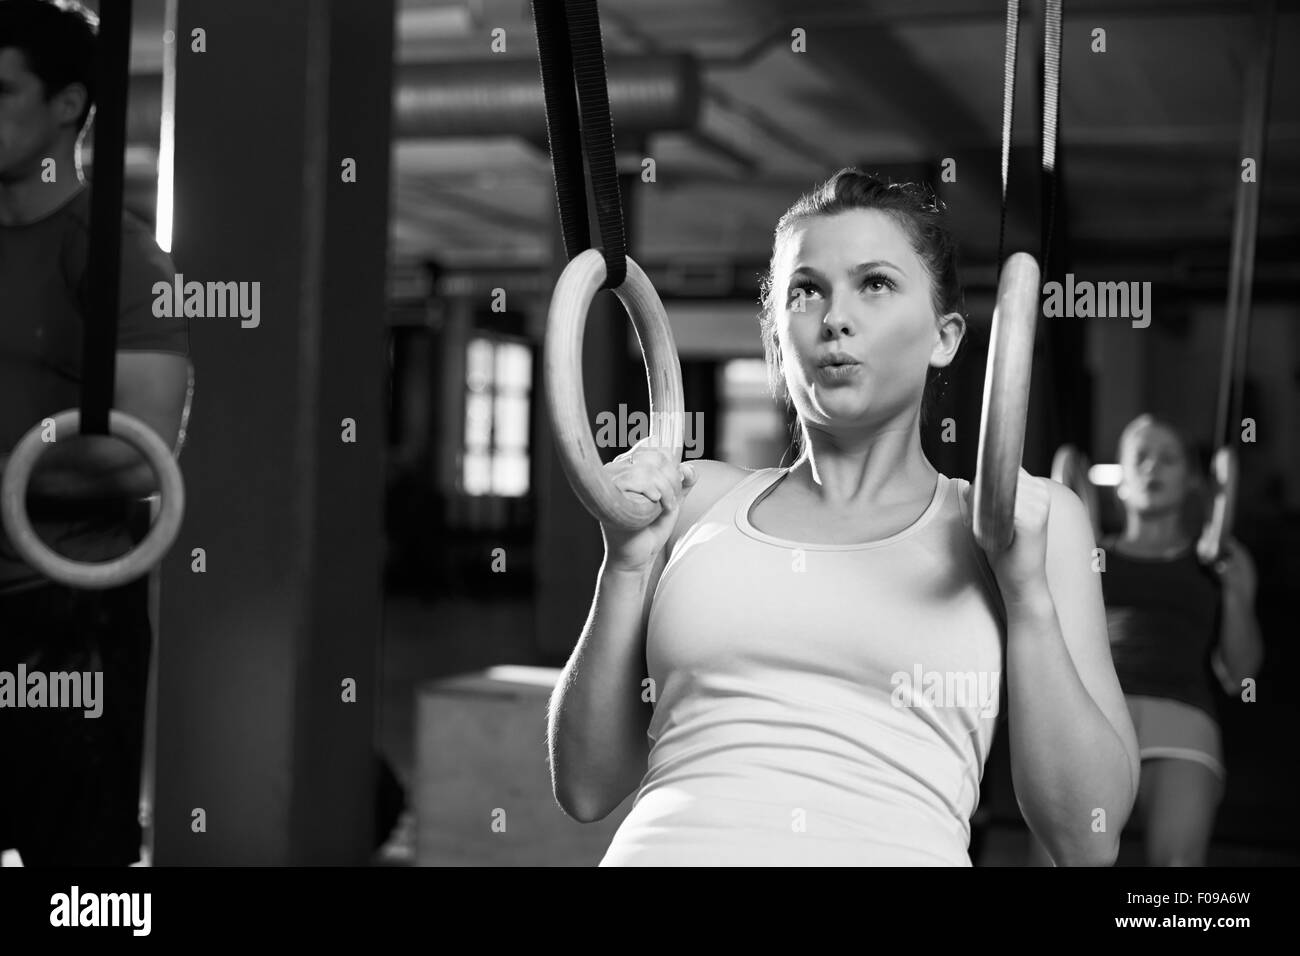 Tourné en noir et blanc d'une femme à l'aide d'anneaux de gymnastique en salle de sport Banque D'Images